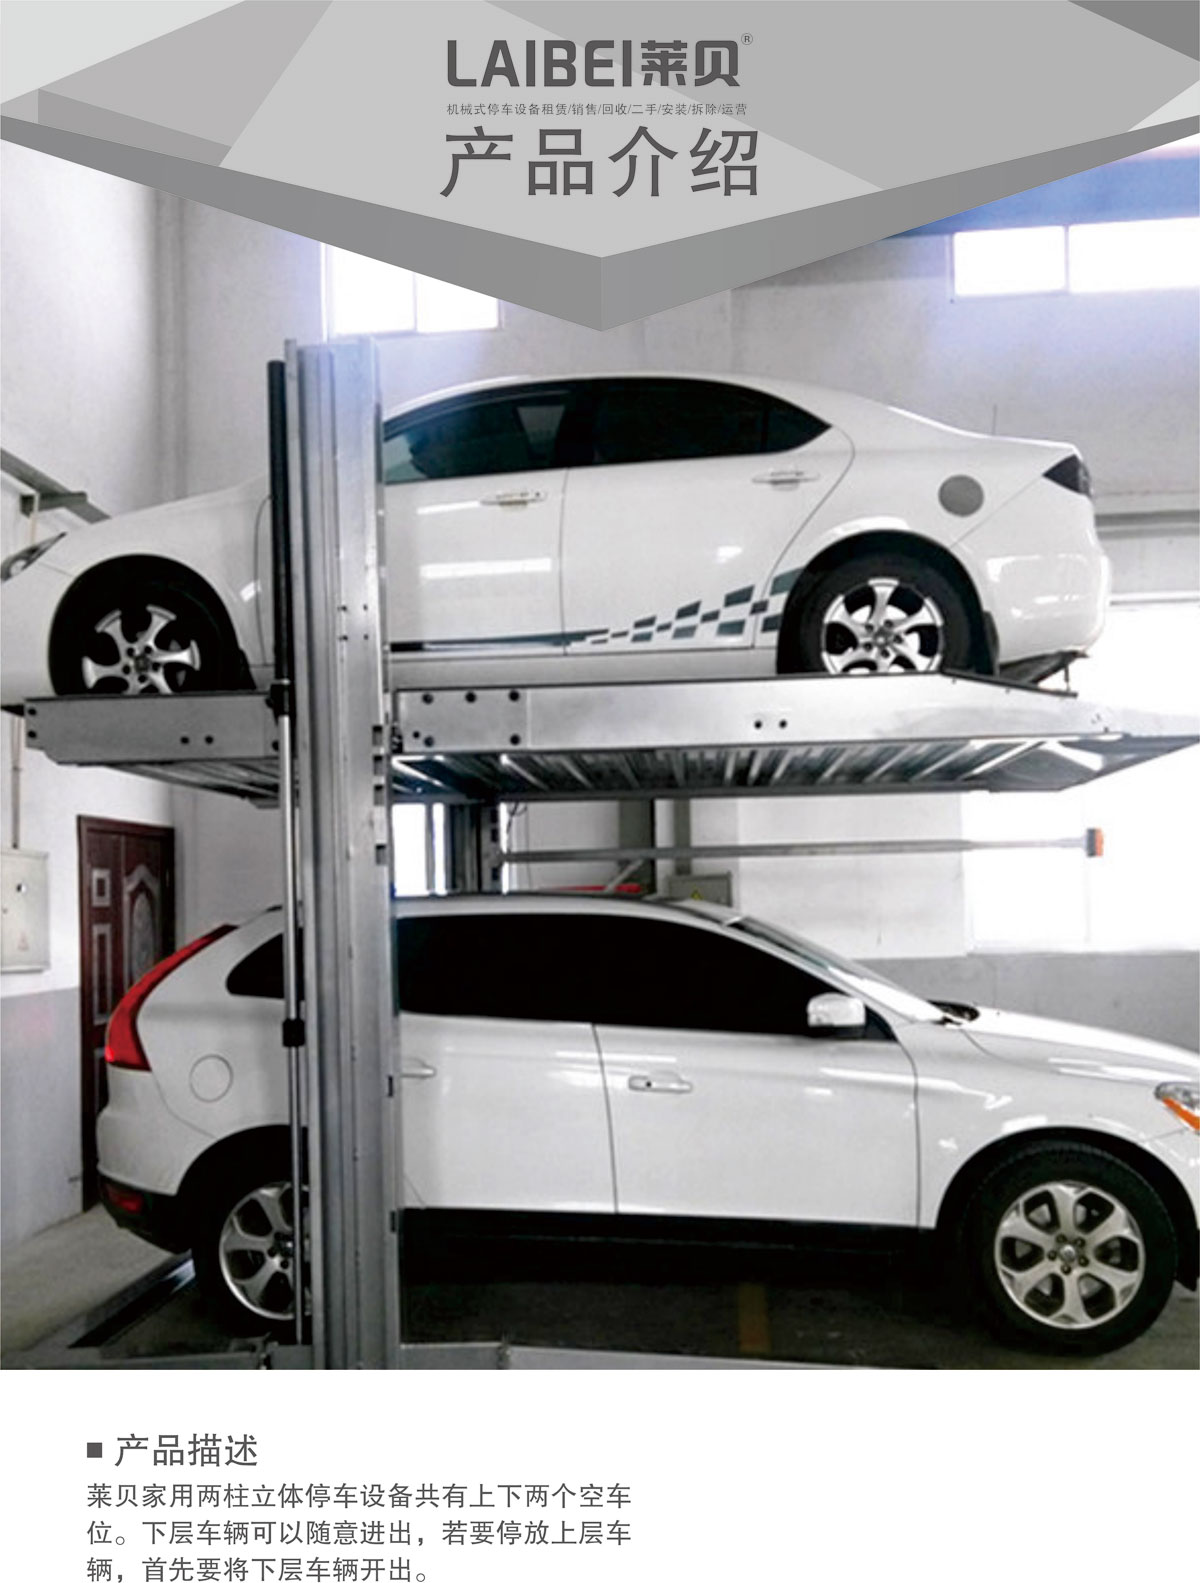 07PJS两柱简易升降机械式停车设备产品介绍.jpg